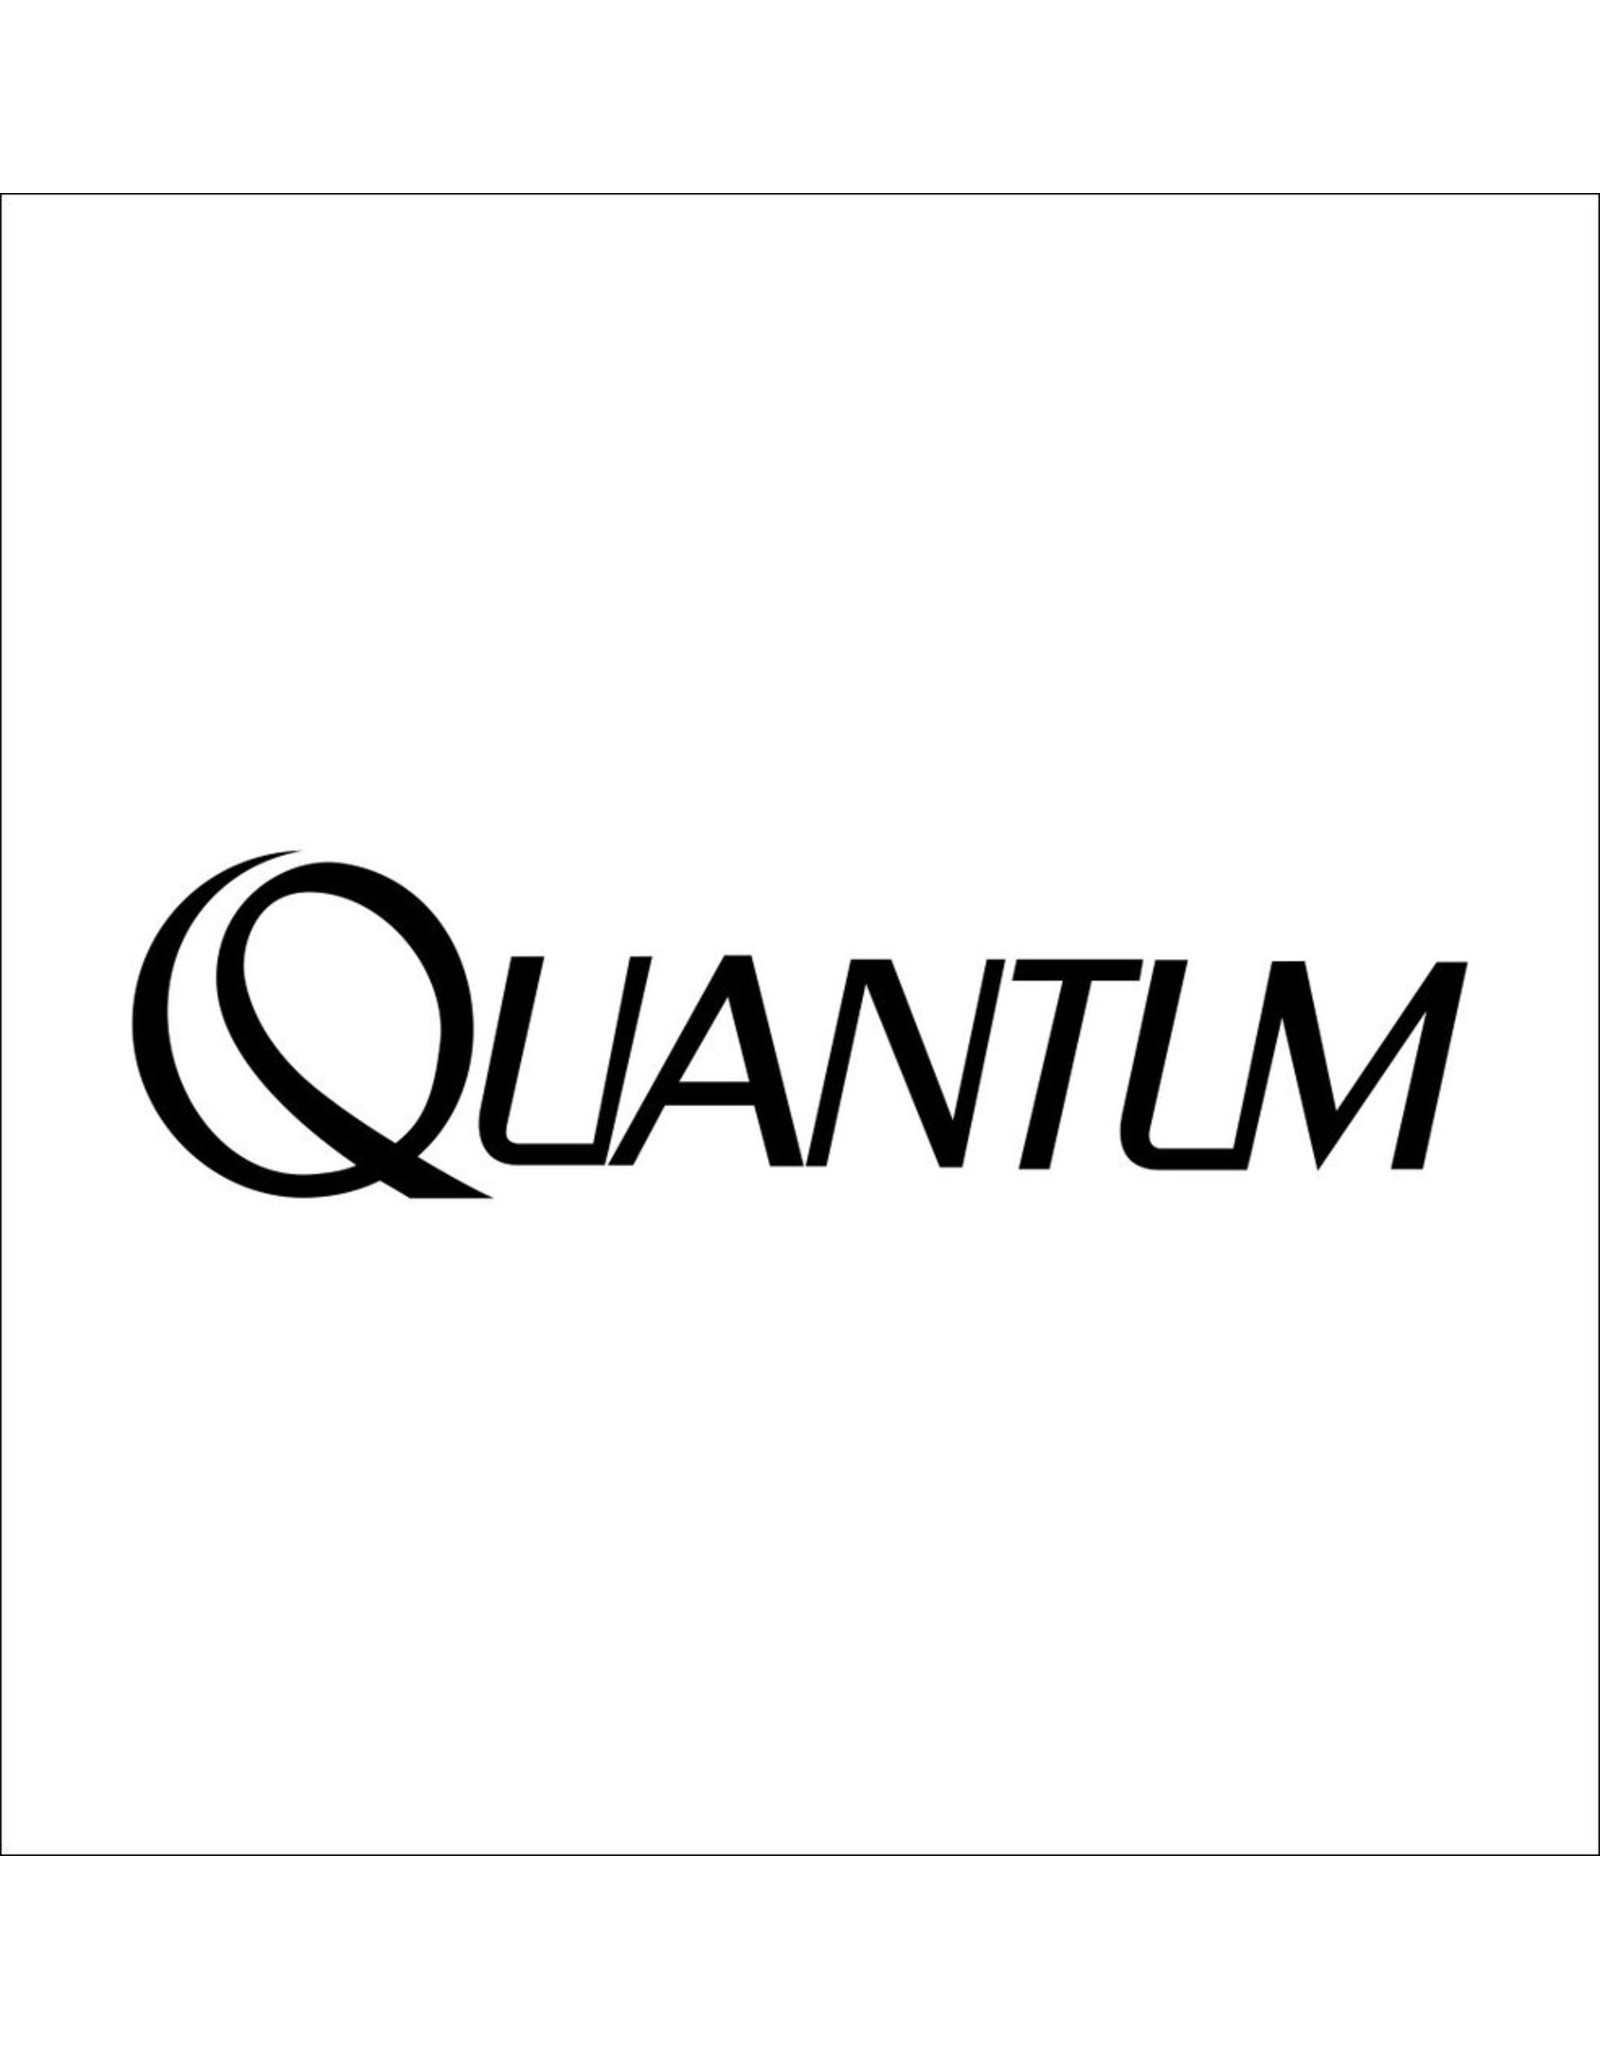 Quantum PW061-01  STABILIZER BAR "A"